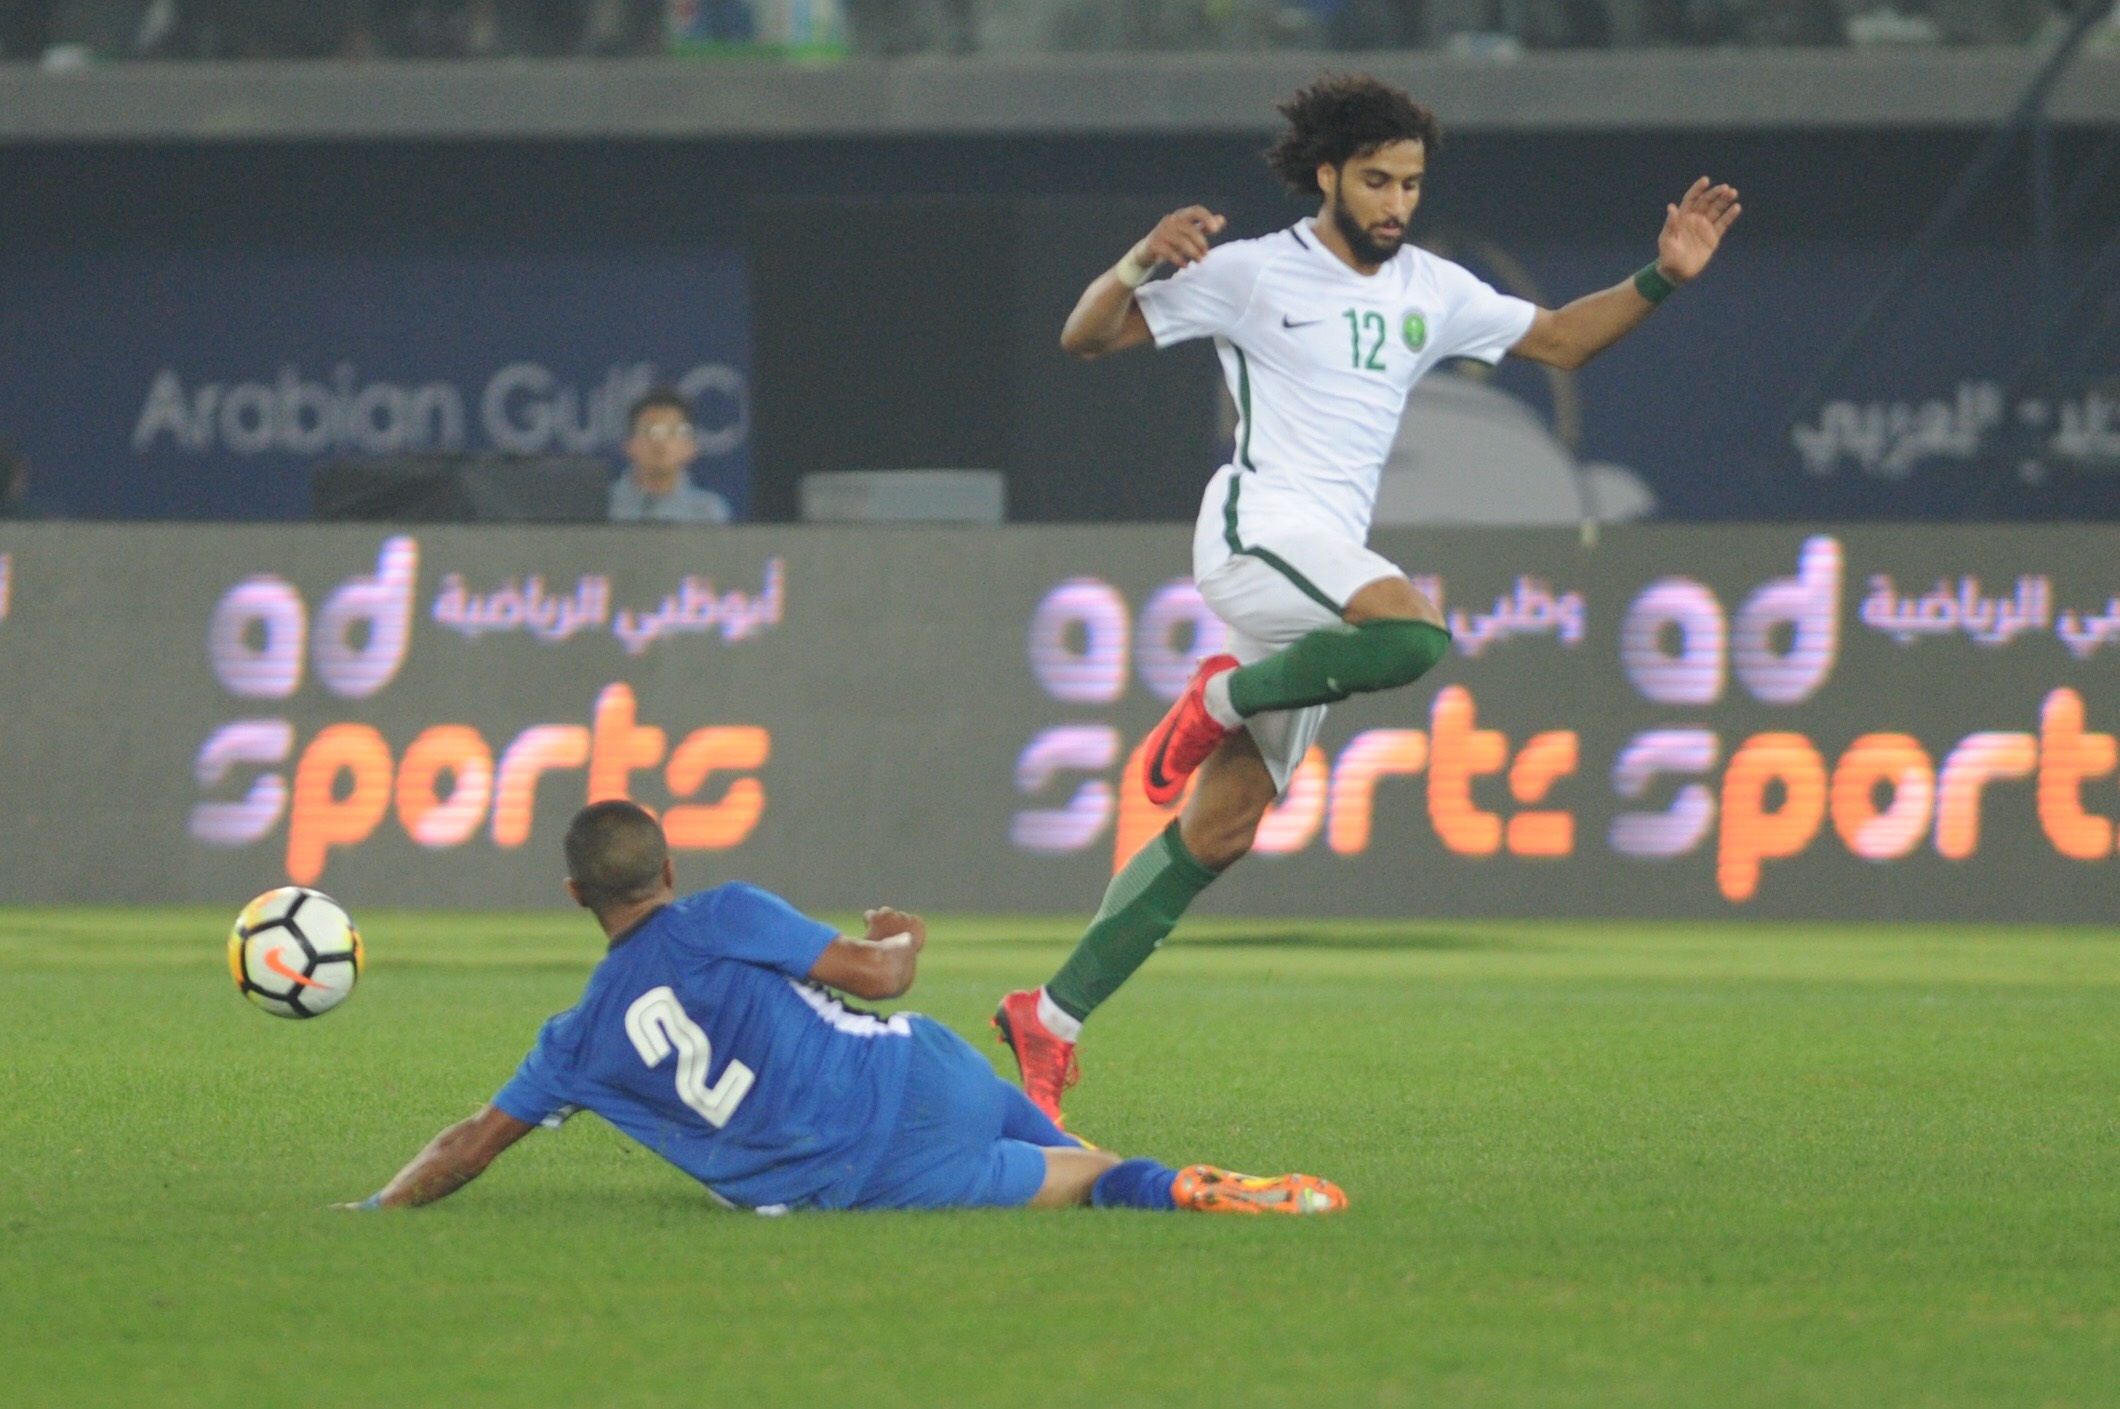 جانب من مباراة المنتخب الكويتي مع نظيره السعودي في انطلاق مباريات كاس الخليج العربي لكرة القدم (خليجي 23)